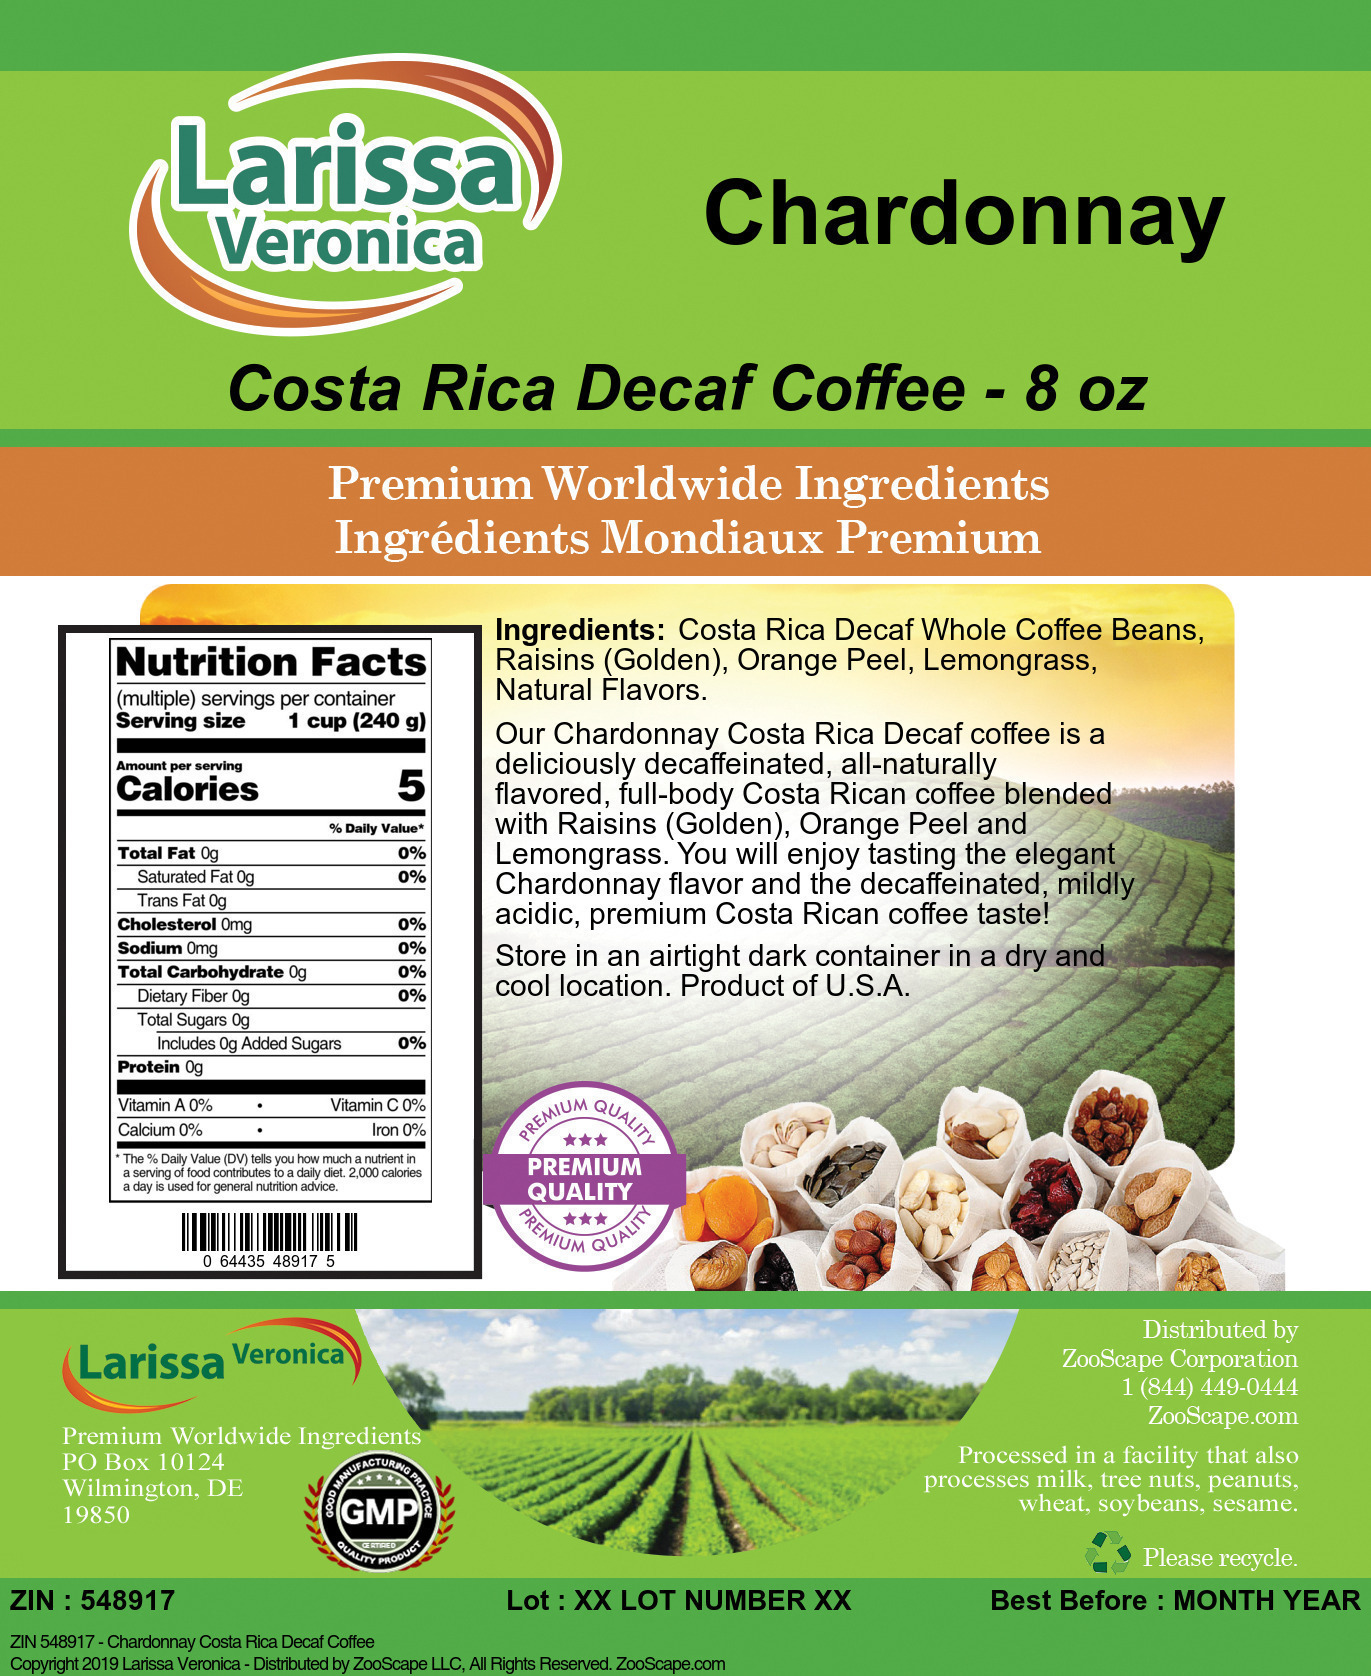 Chardonnay Costa Rica Decaf Coffee - Label